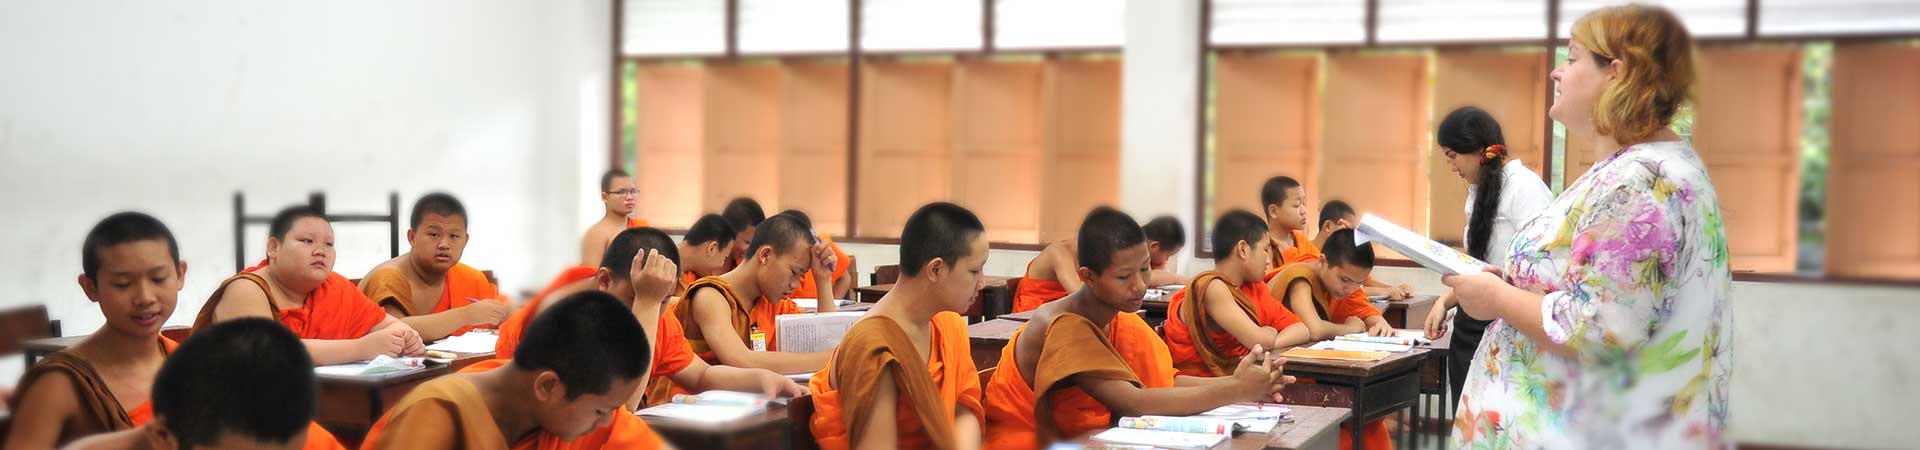 Voluntário ensinando inglês para monges em Chiang Mai, Tailândia